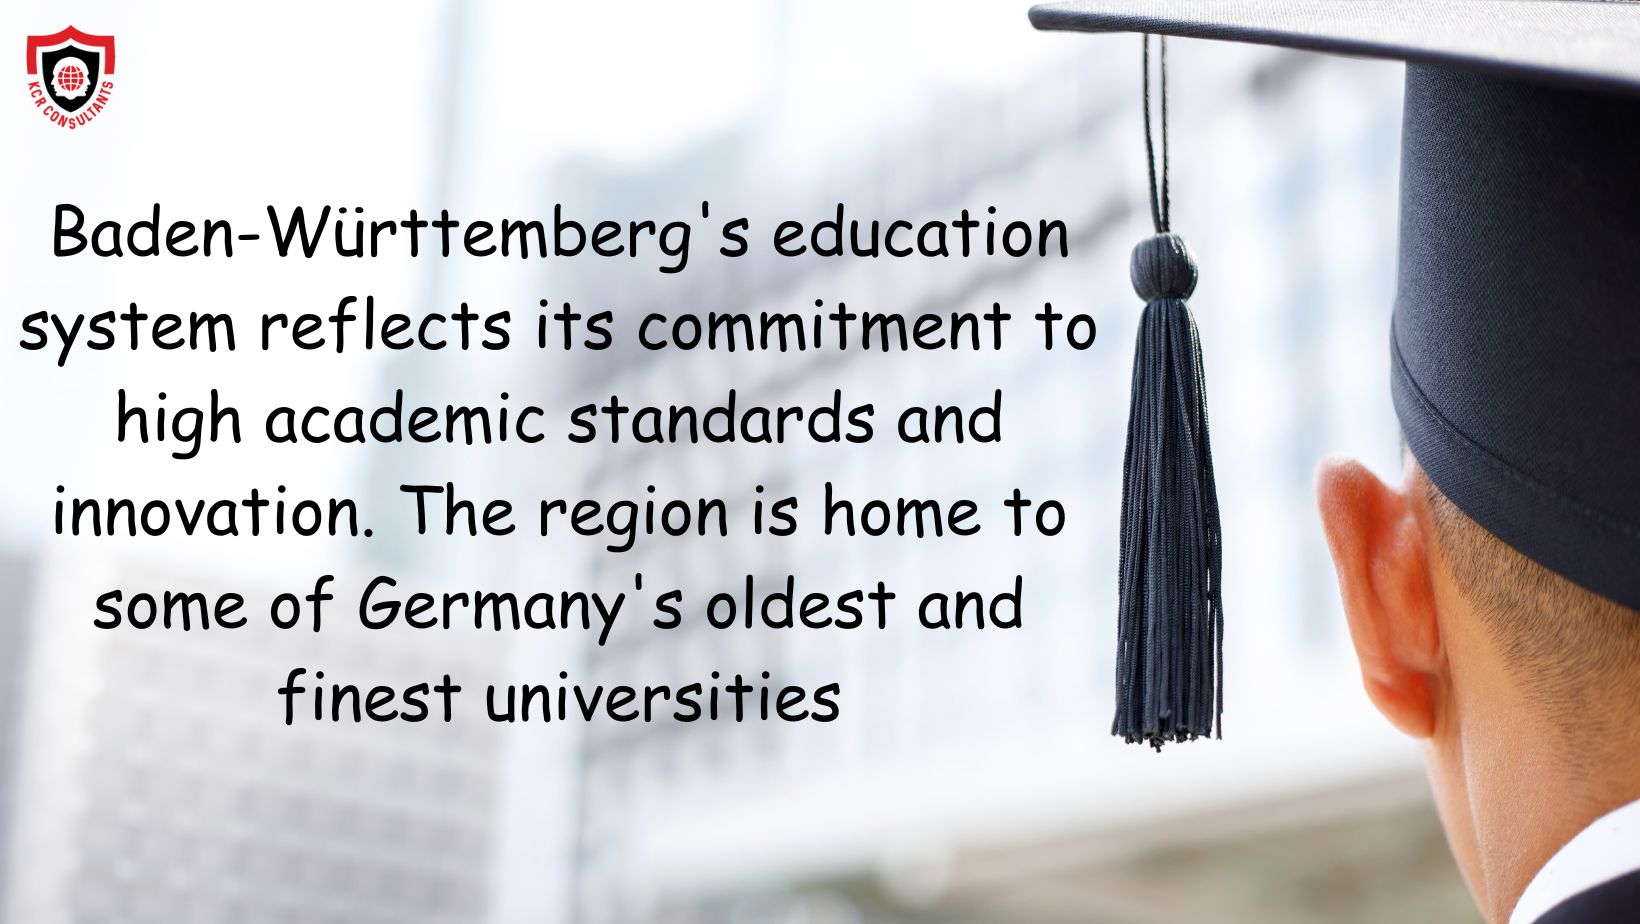 BADEN-WÜRTTEMBERG - Higher education